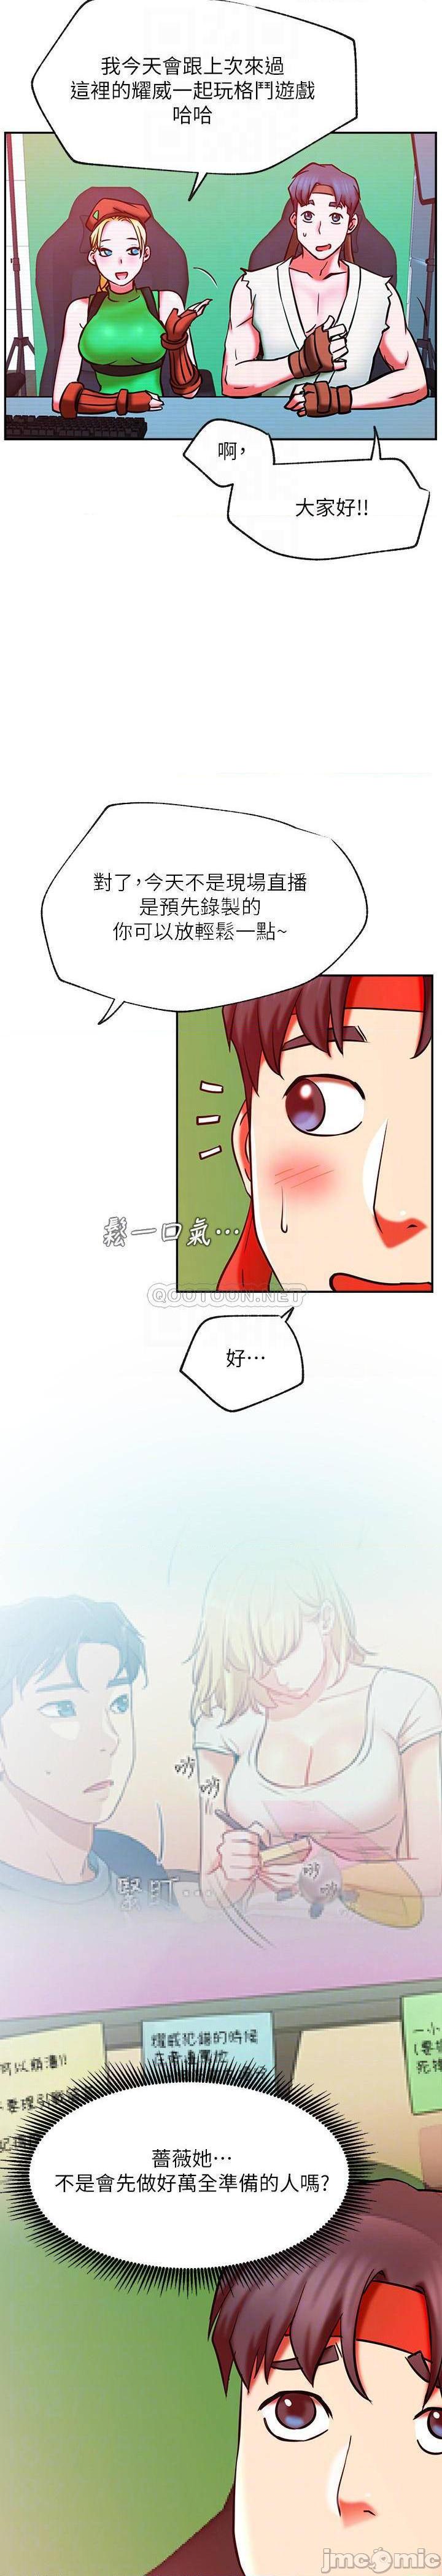 《网红私生活》漫画 第30话 - 火热的角色扮演